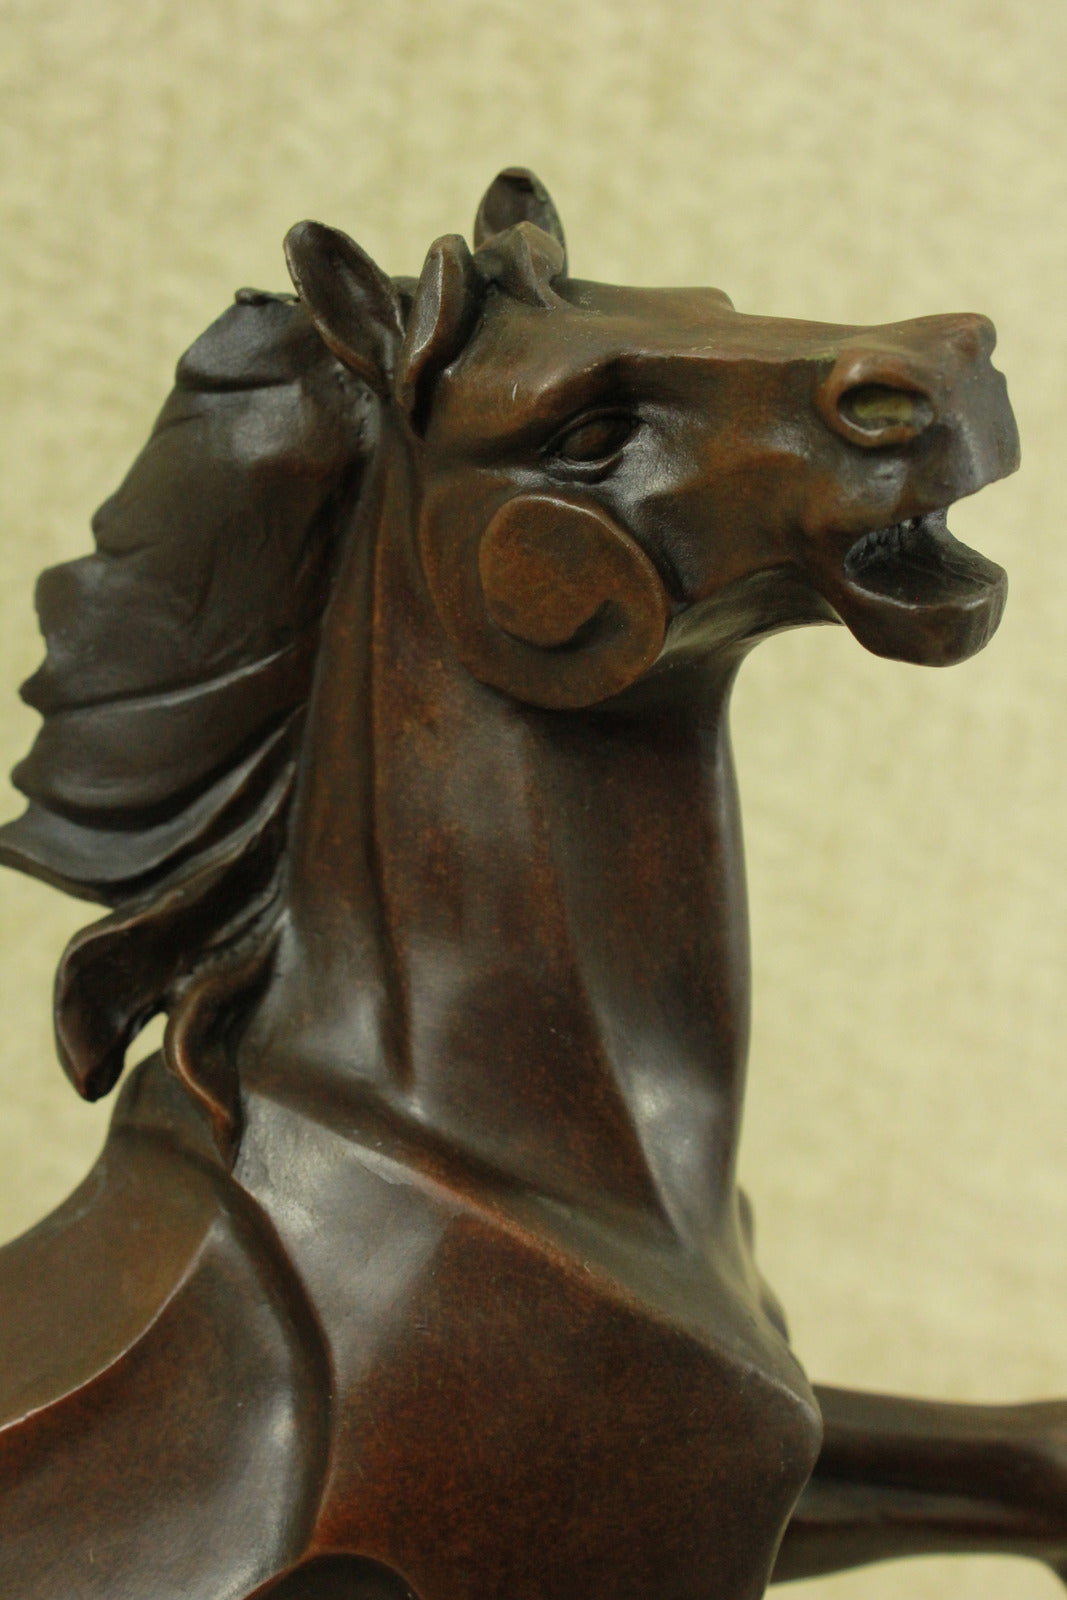 Abstract Modern Art Horse Gallops Bronze Sculpture Statue Figurine Figure